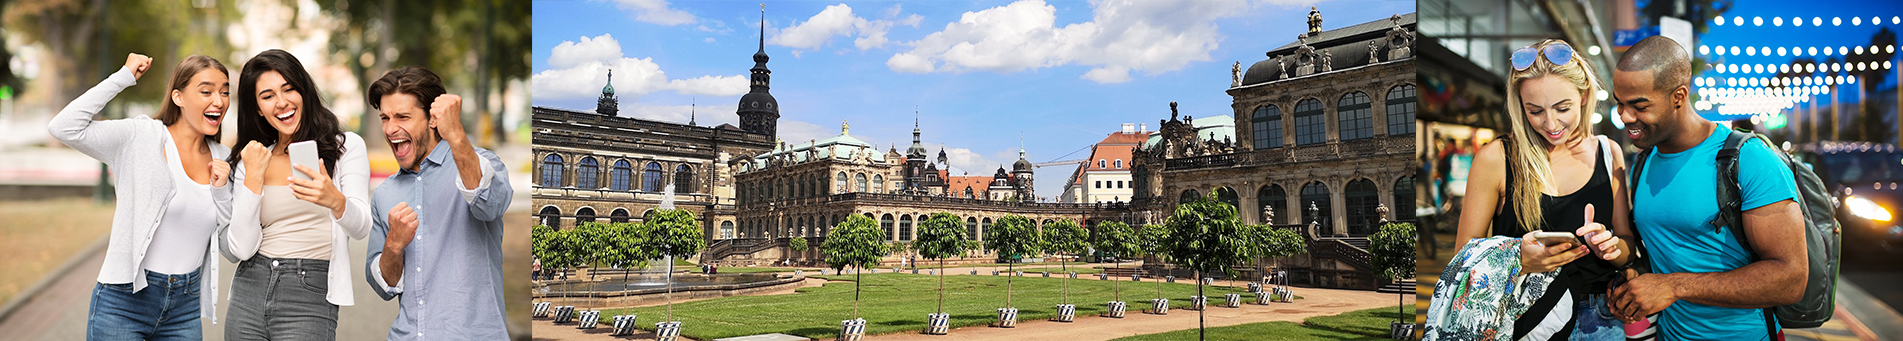 citygames Dresden